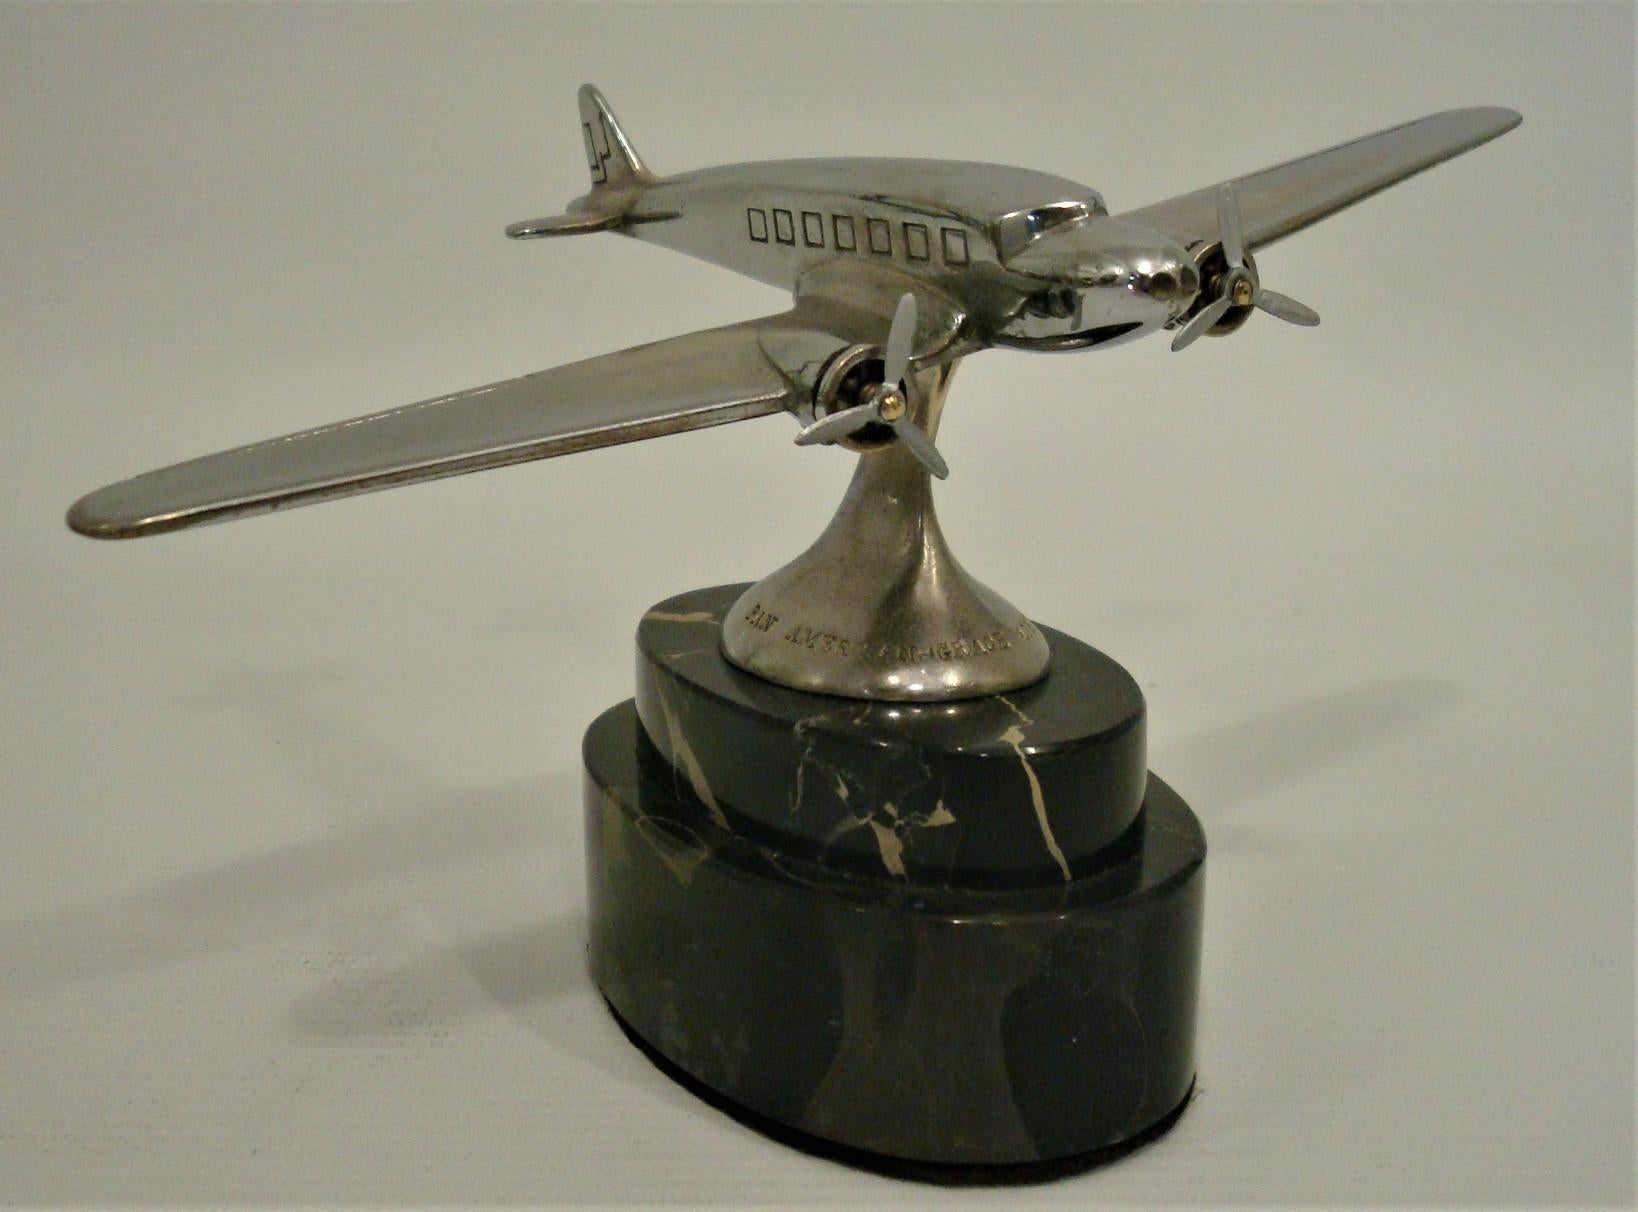 Pan American - Grace Airways Airplane Modell Werbung Briefbeschwerer. 
circa 1930er Jahre.

Pan American-Grace Airways, auch als Panagra bekannt und als 